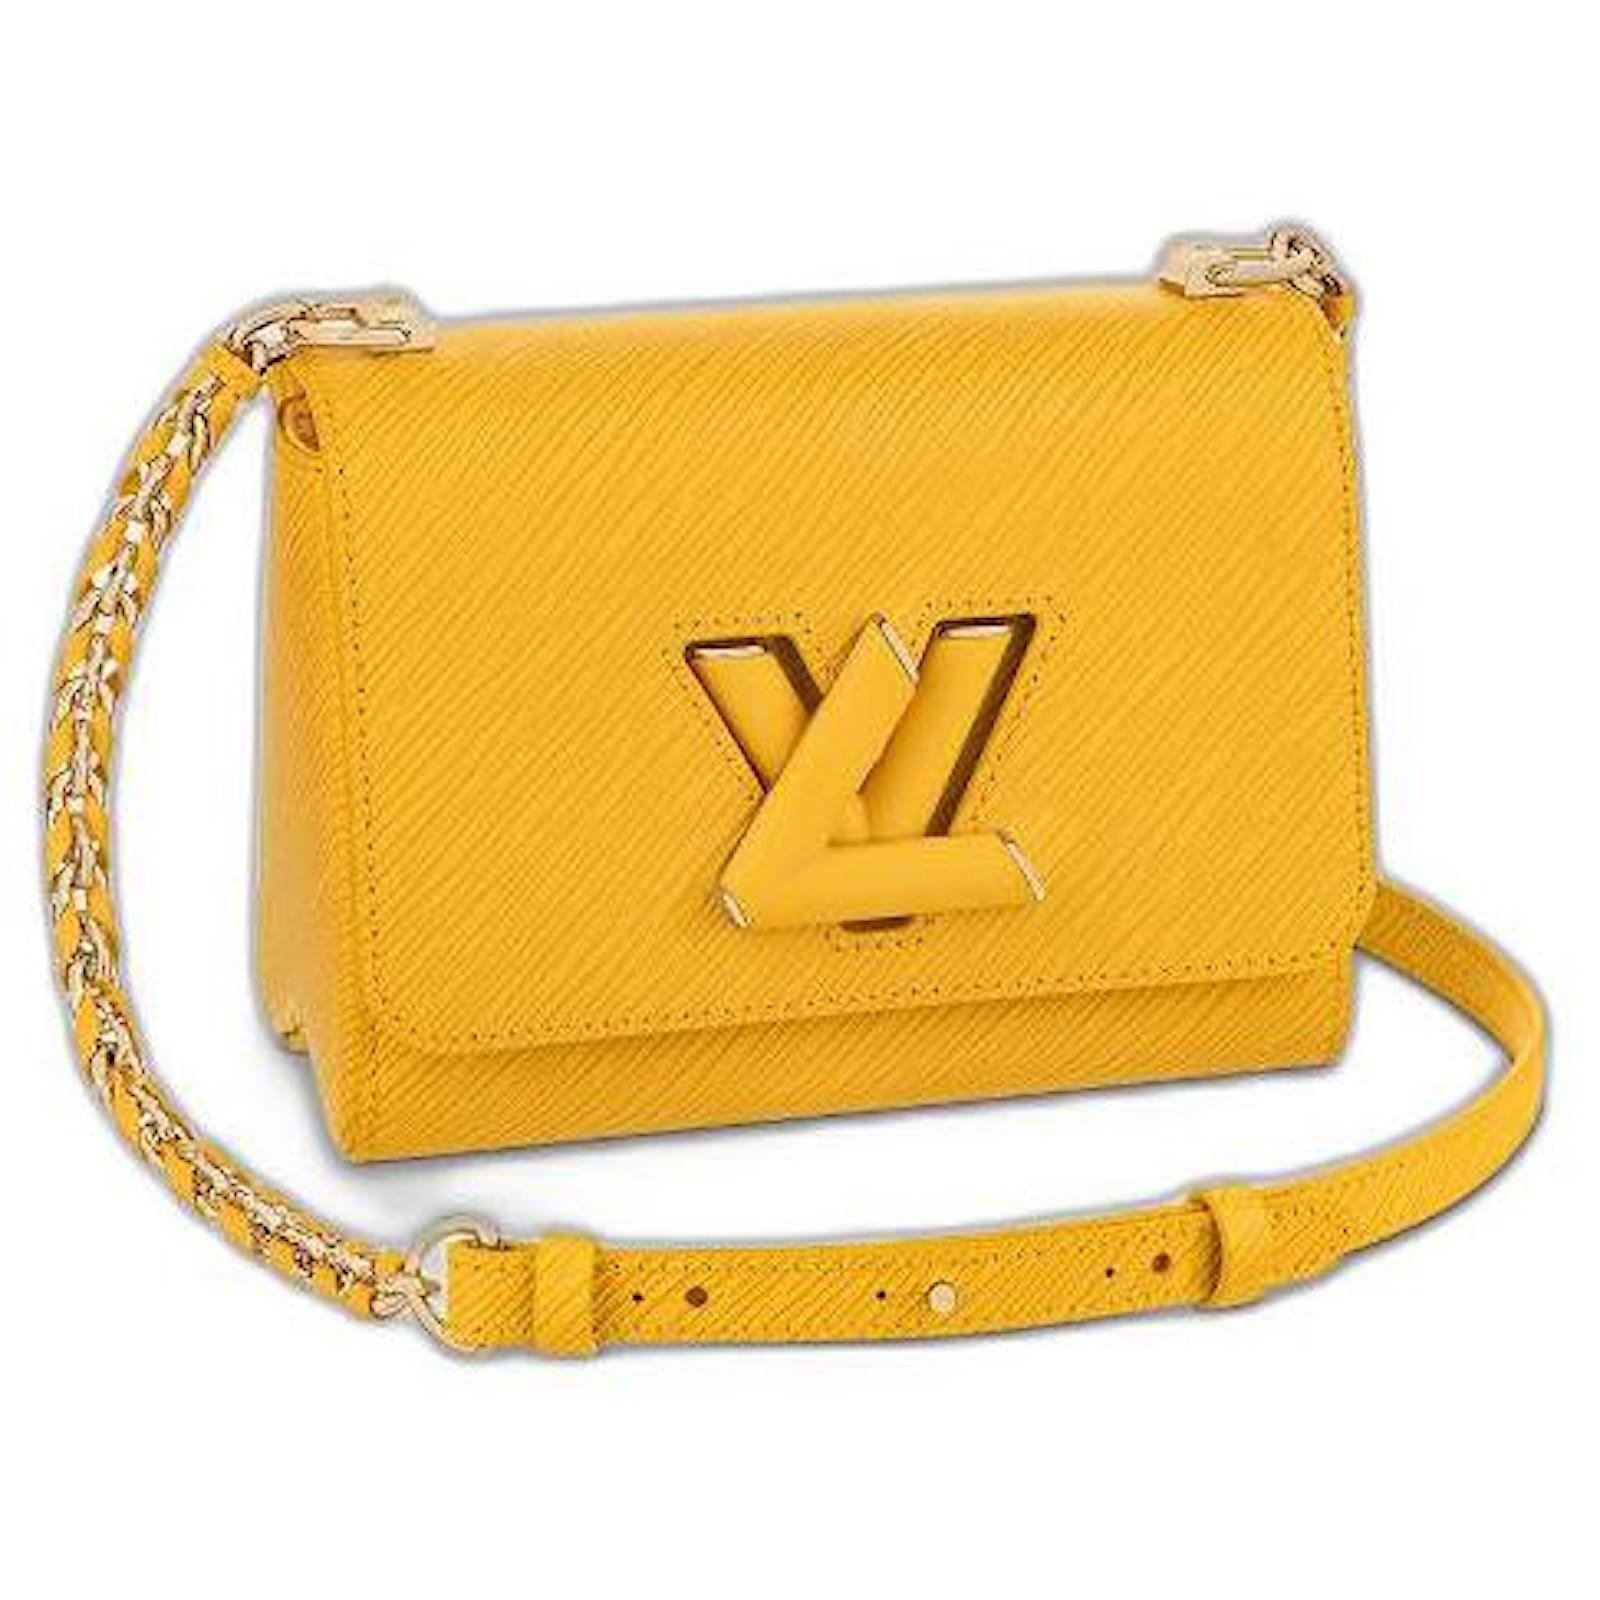 Borsa Louis Vuitton Twist in pelle Epi gialla con decoro di animali